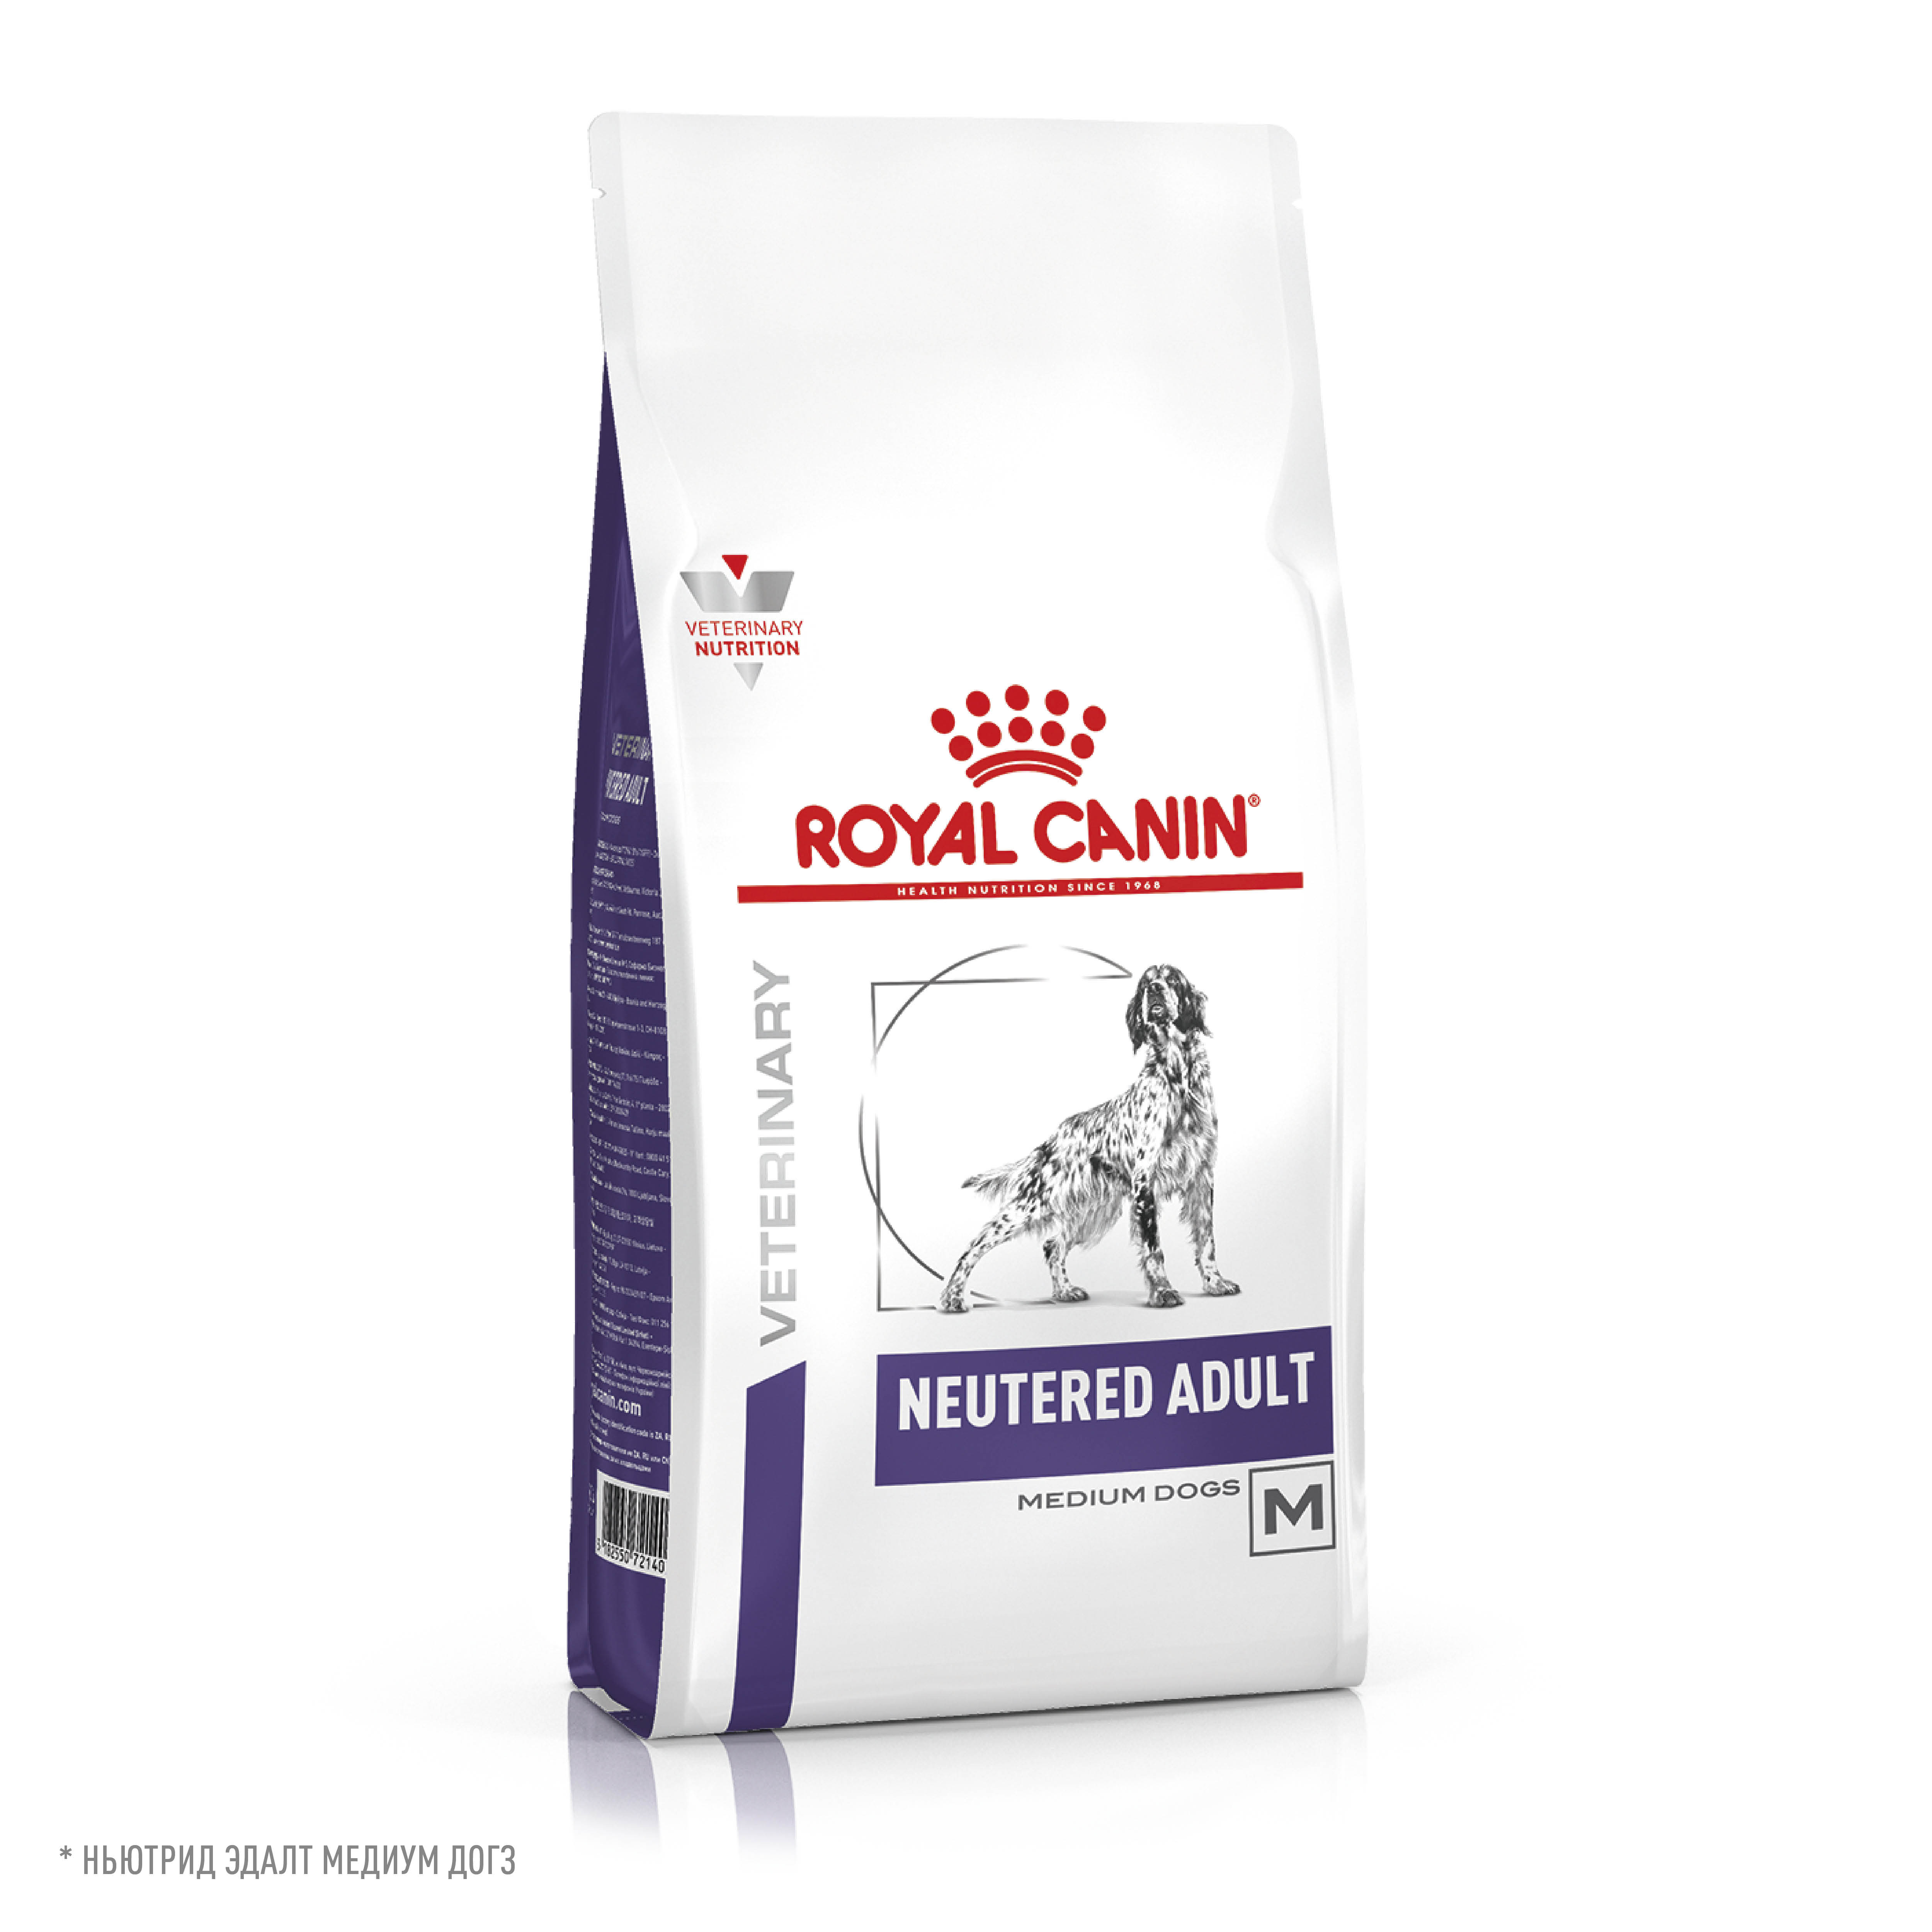 Сухой корм для кастрированных, стерилизованных собак средних размеров Royal Canin Neutered Adult